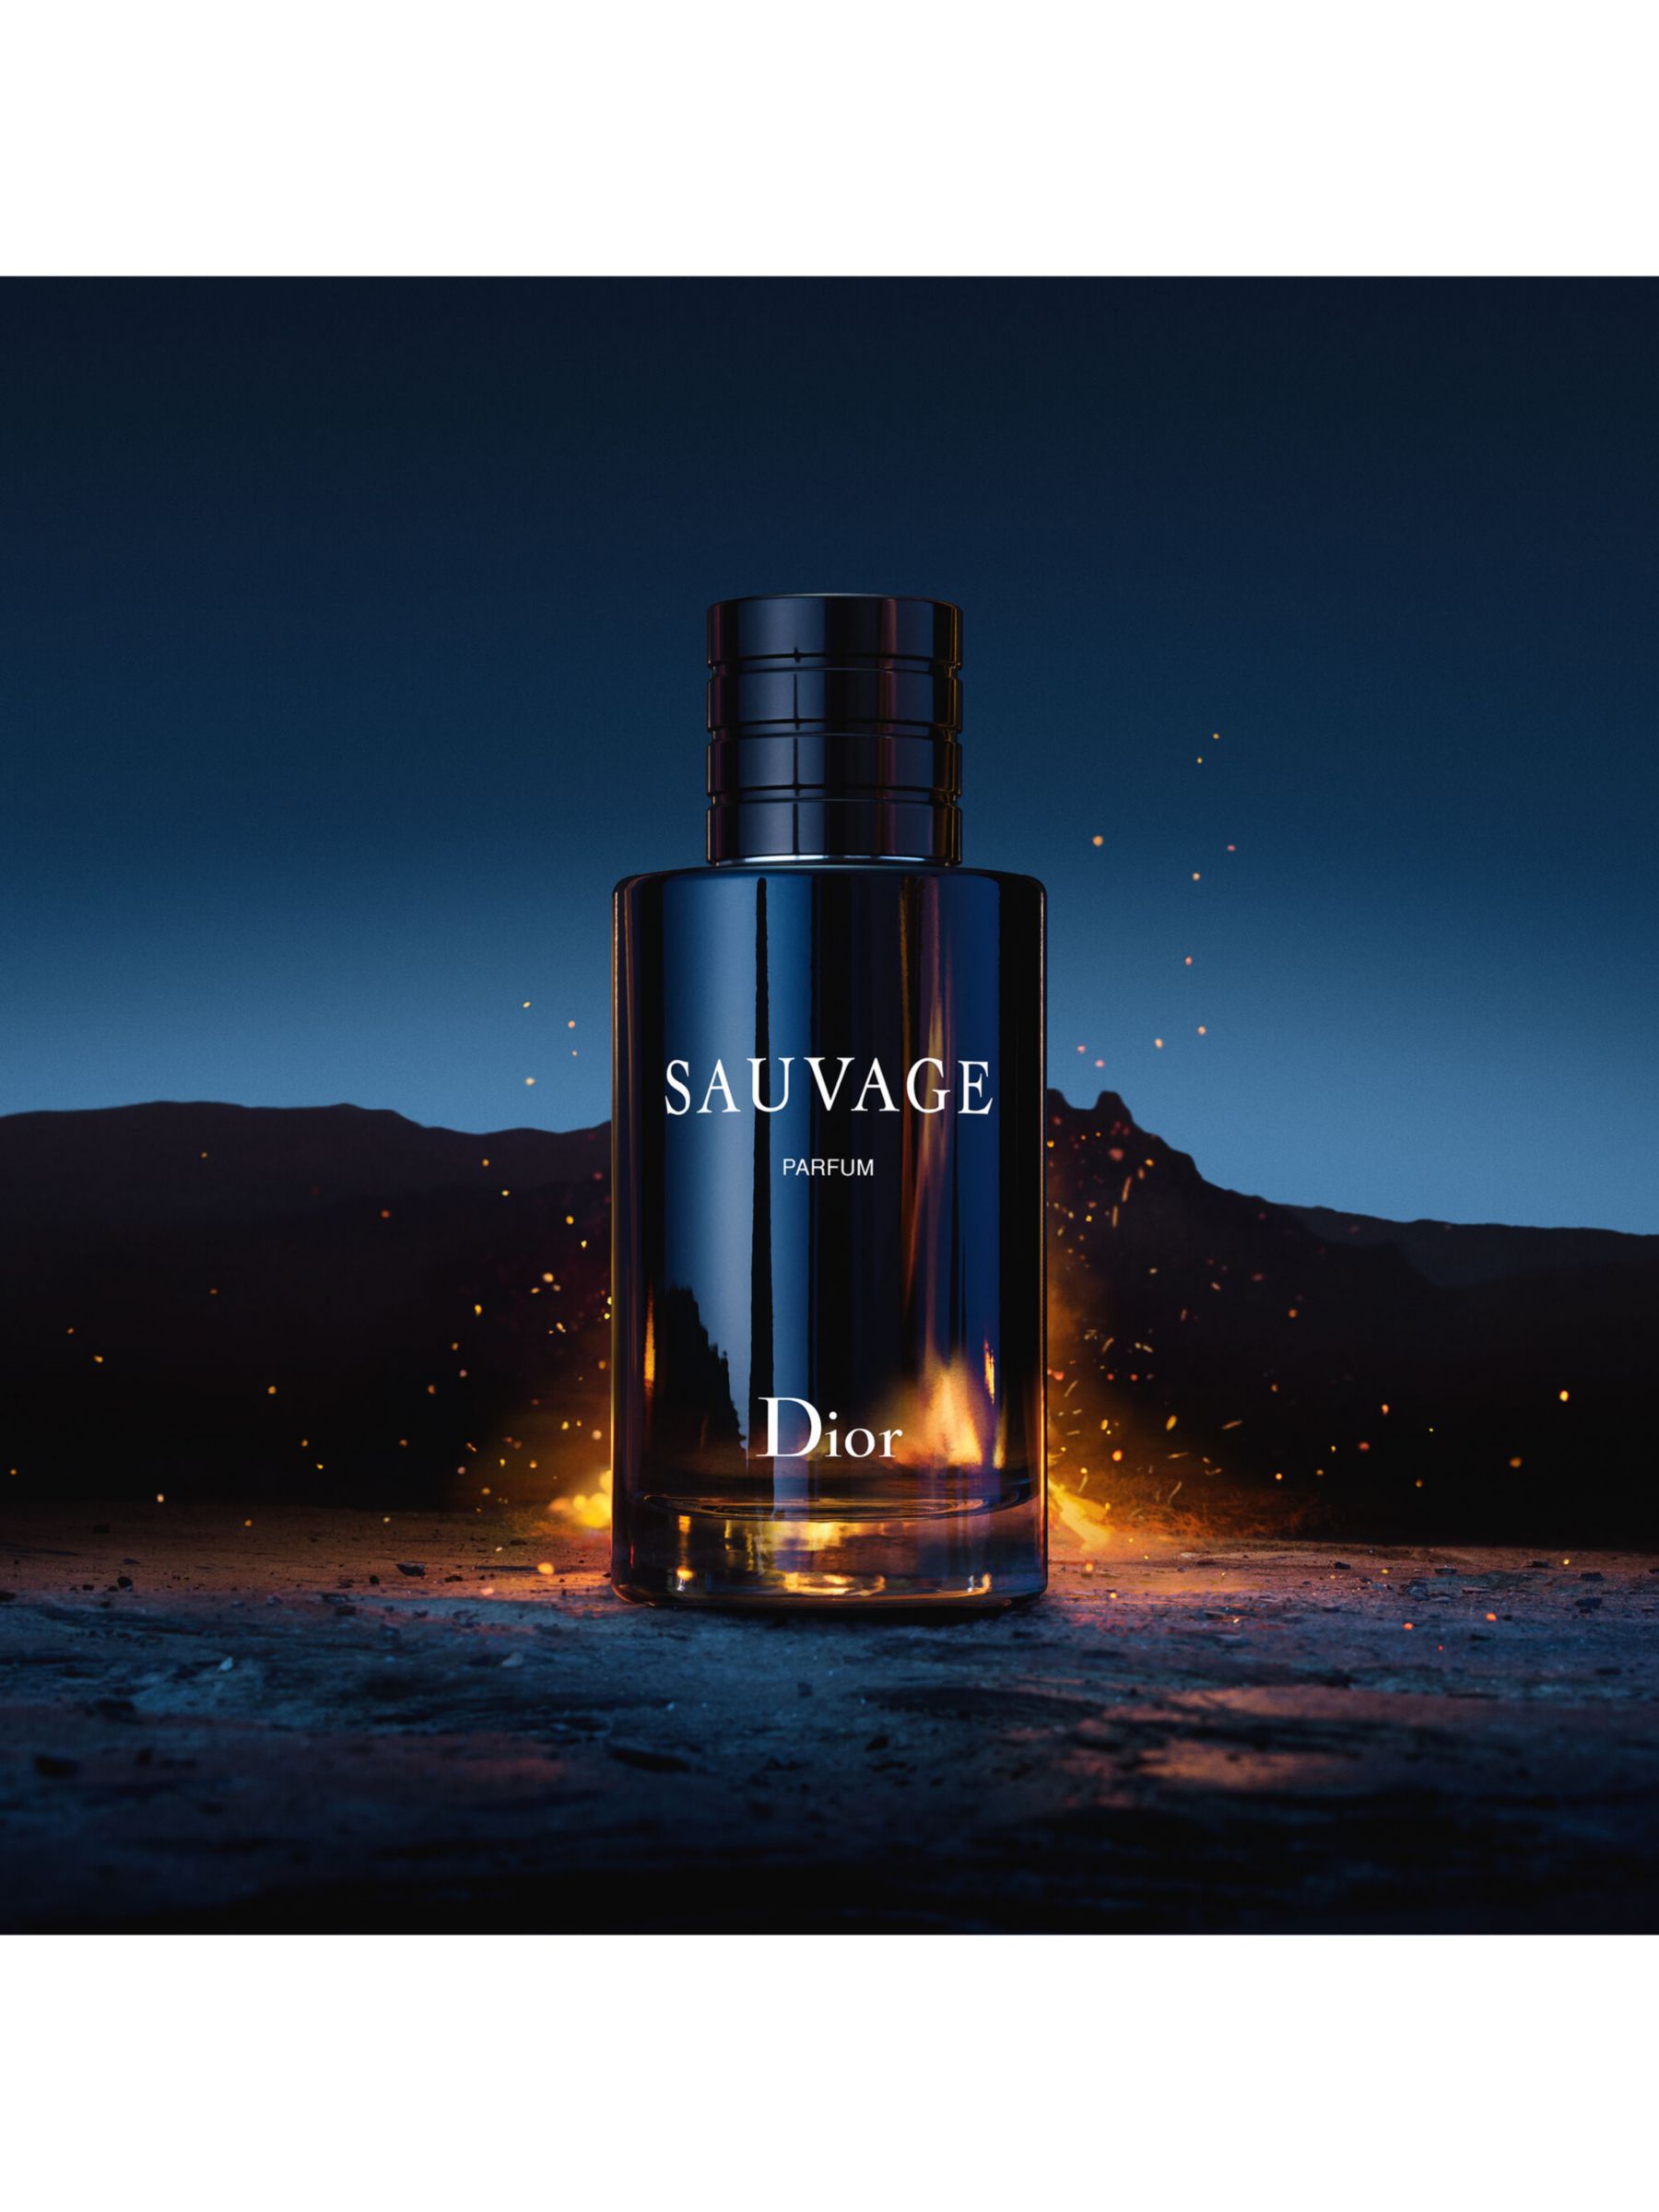 Dior Sauvage Parfum at John Lewis 